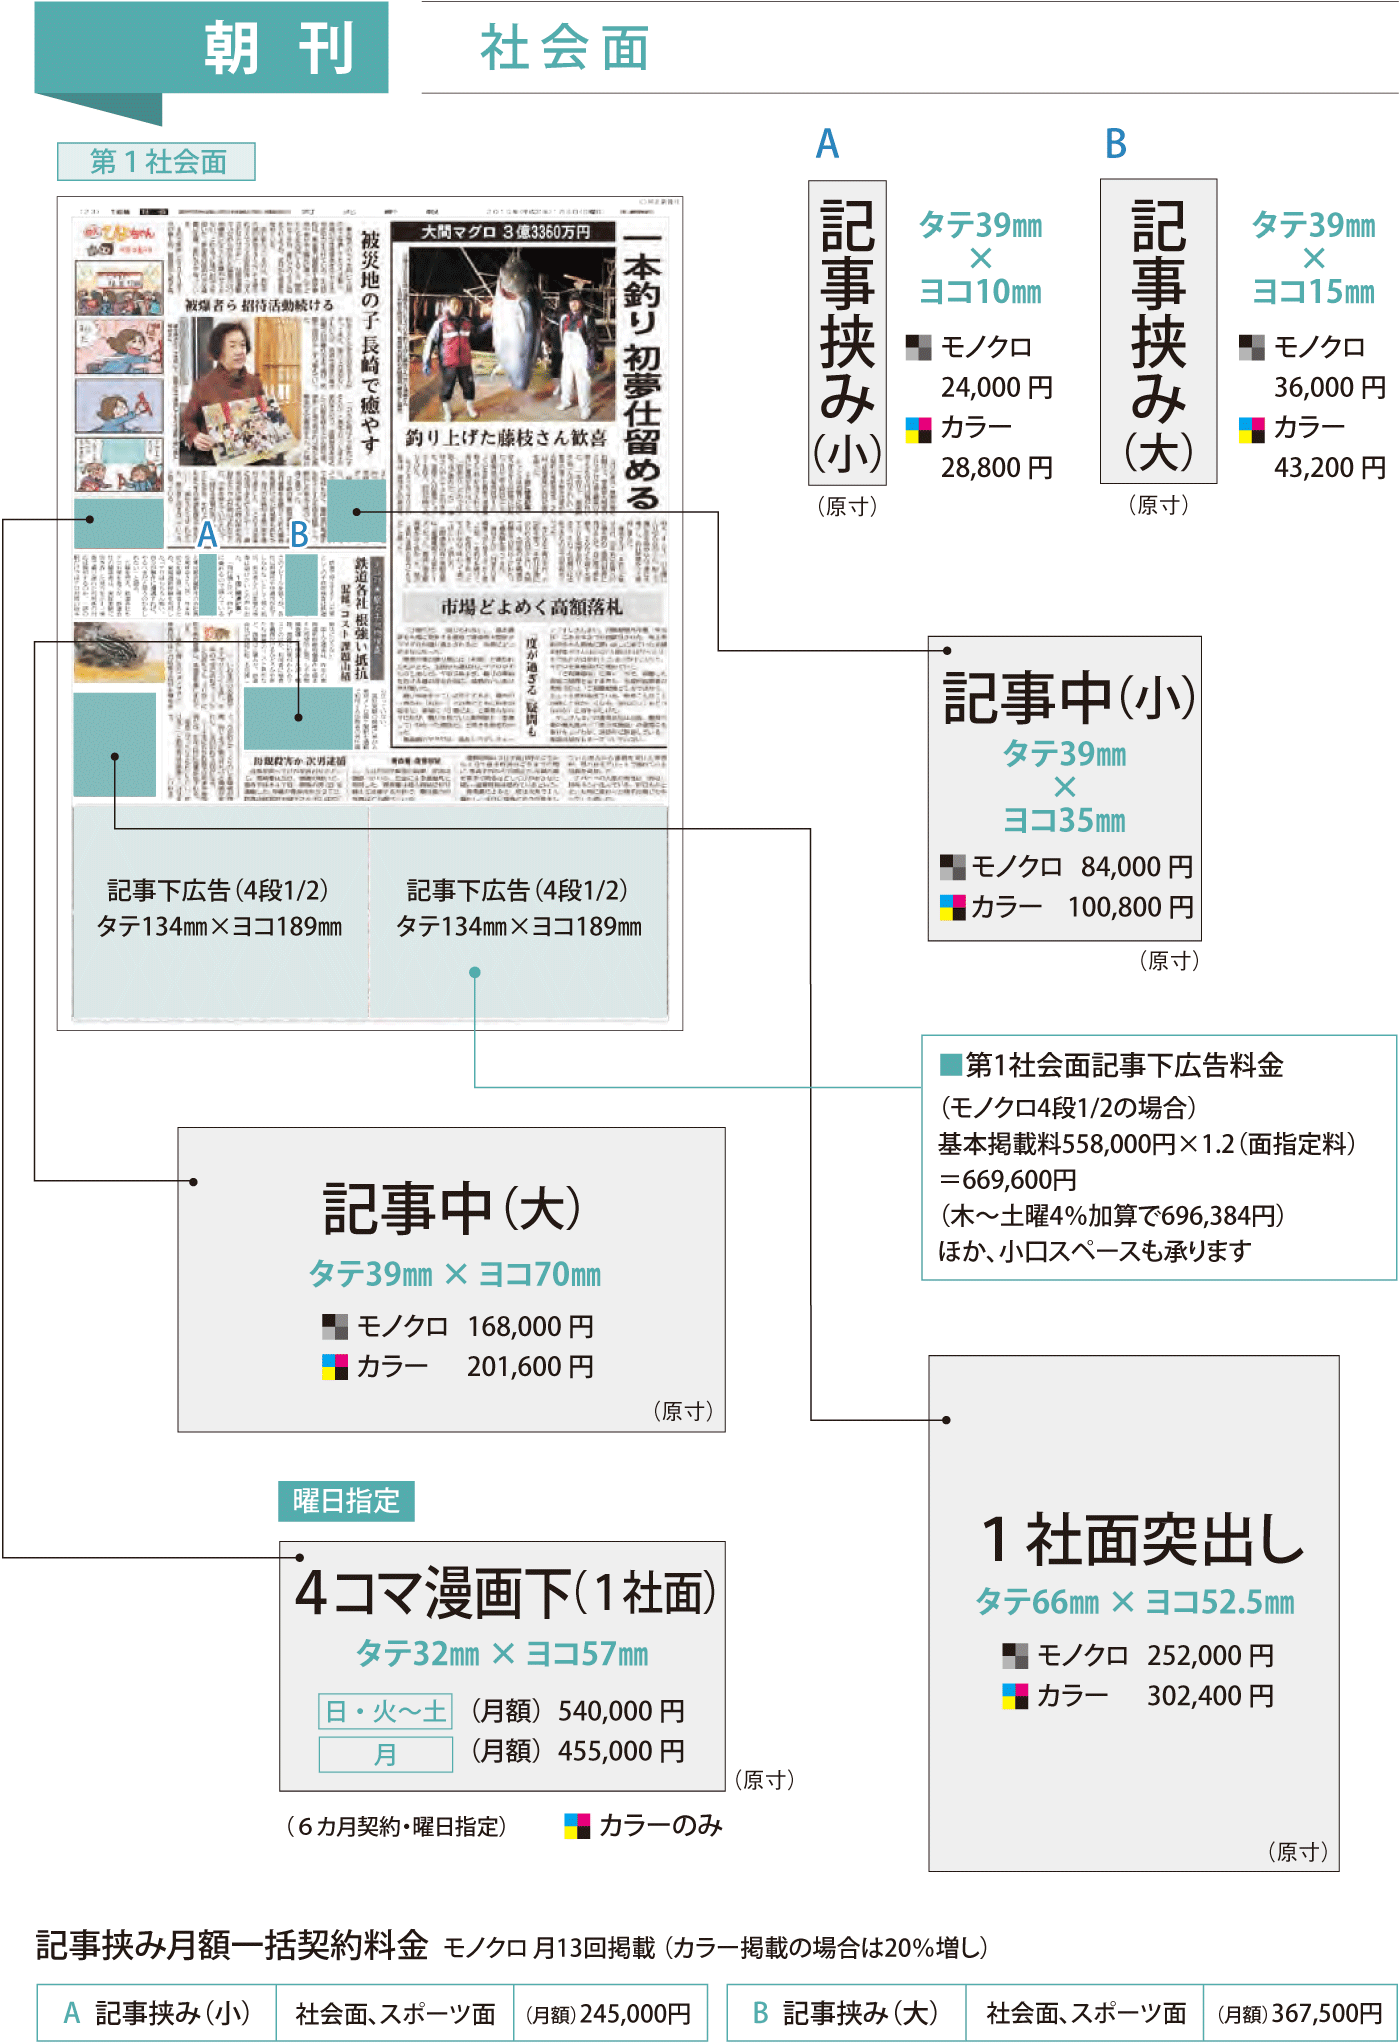 河北新報の朝刊社会面広告掲載イメージ